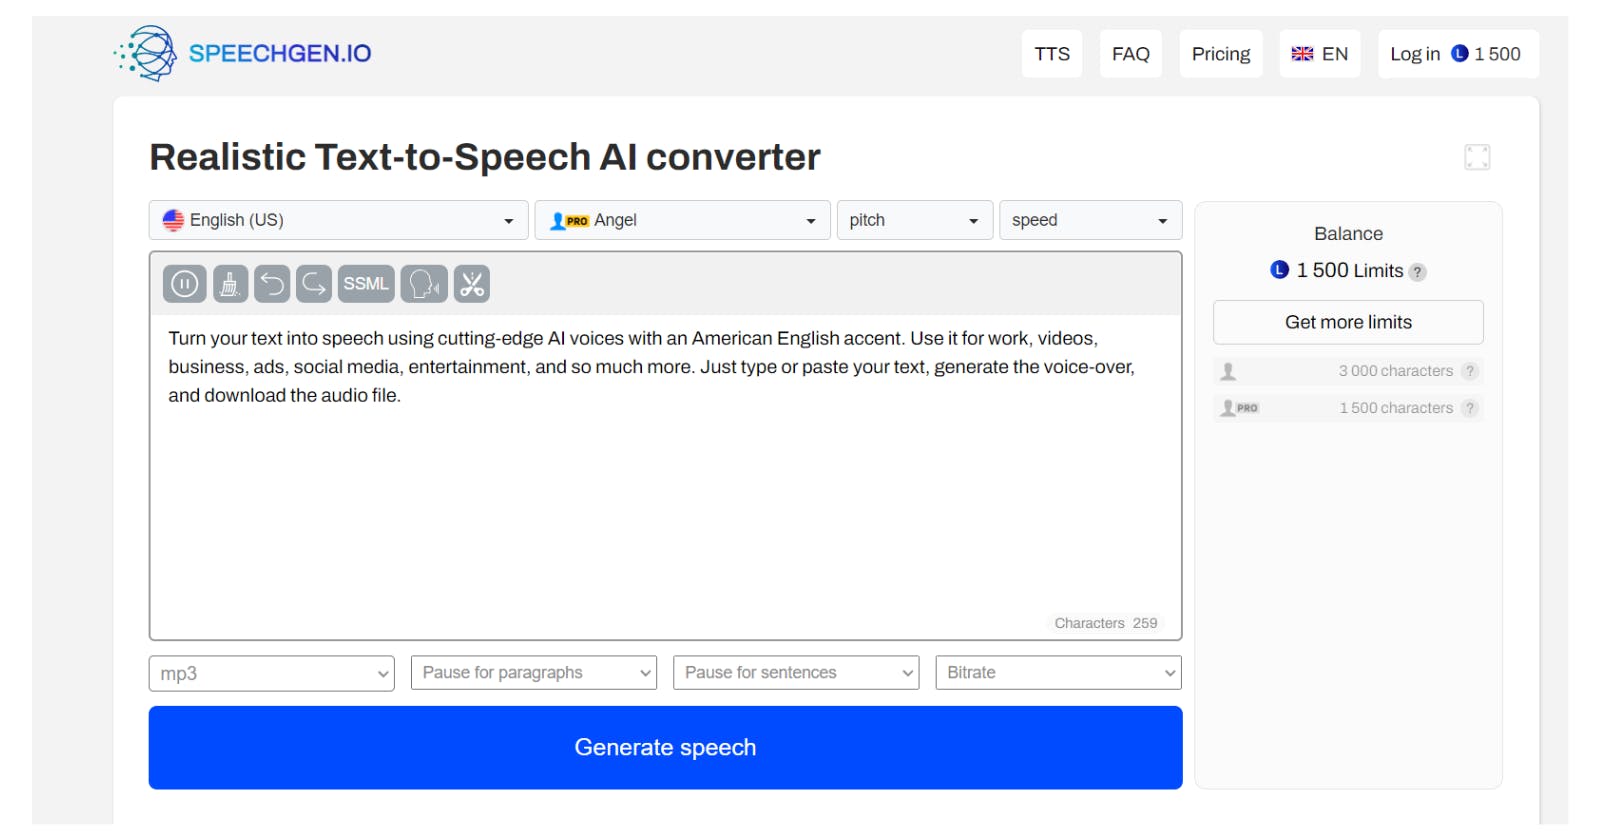 SpeechGen - Realistic Text-to-Speech AI converter